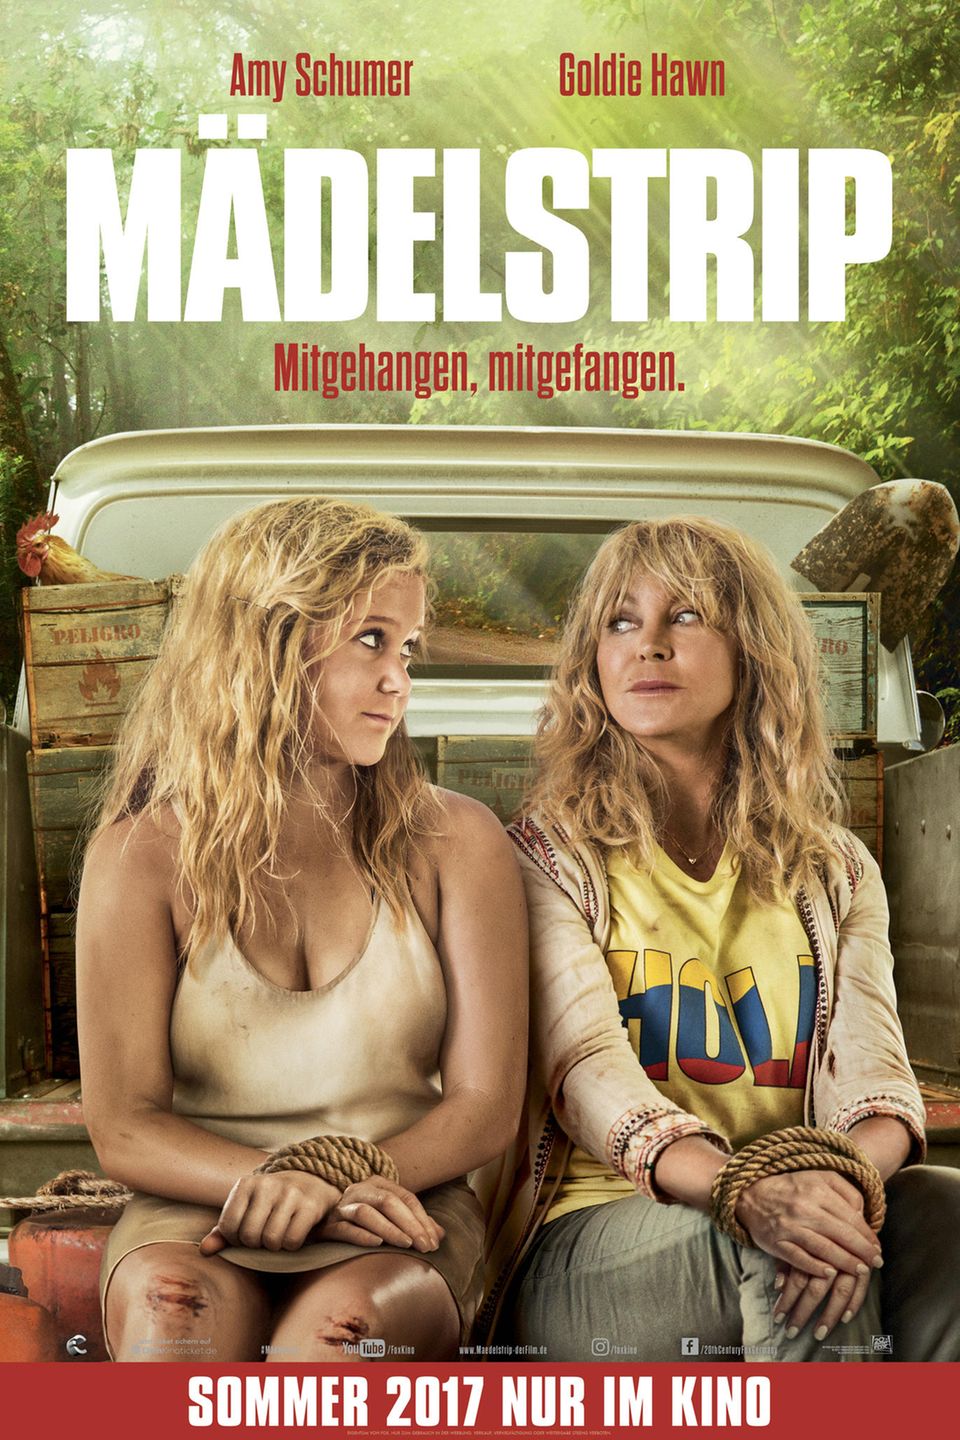 Filmplakat zu "Mädelstrip" mit Amy Schumer und Goldie Hawn